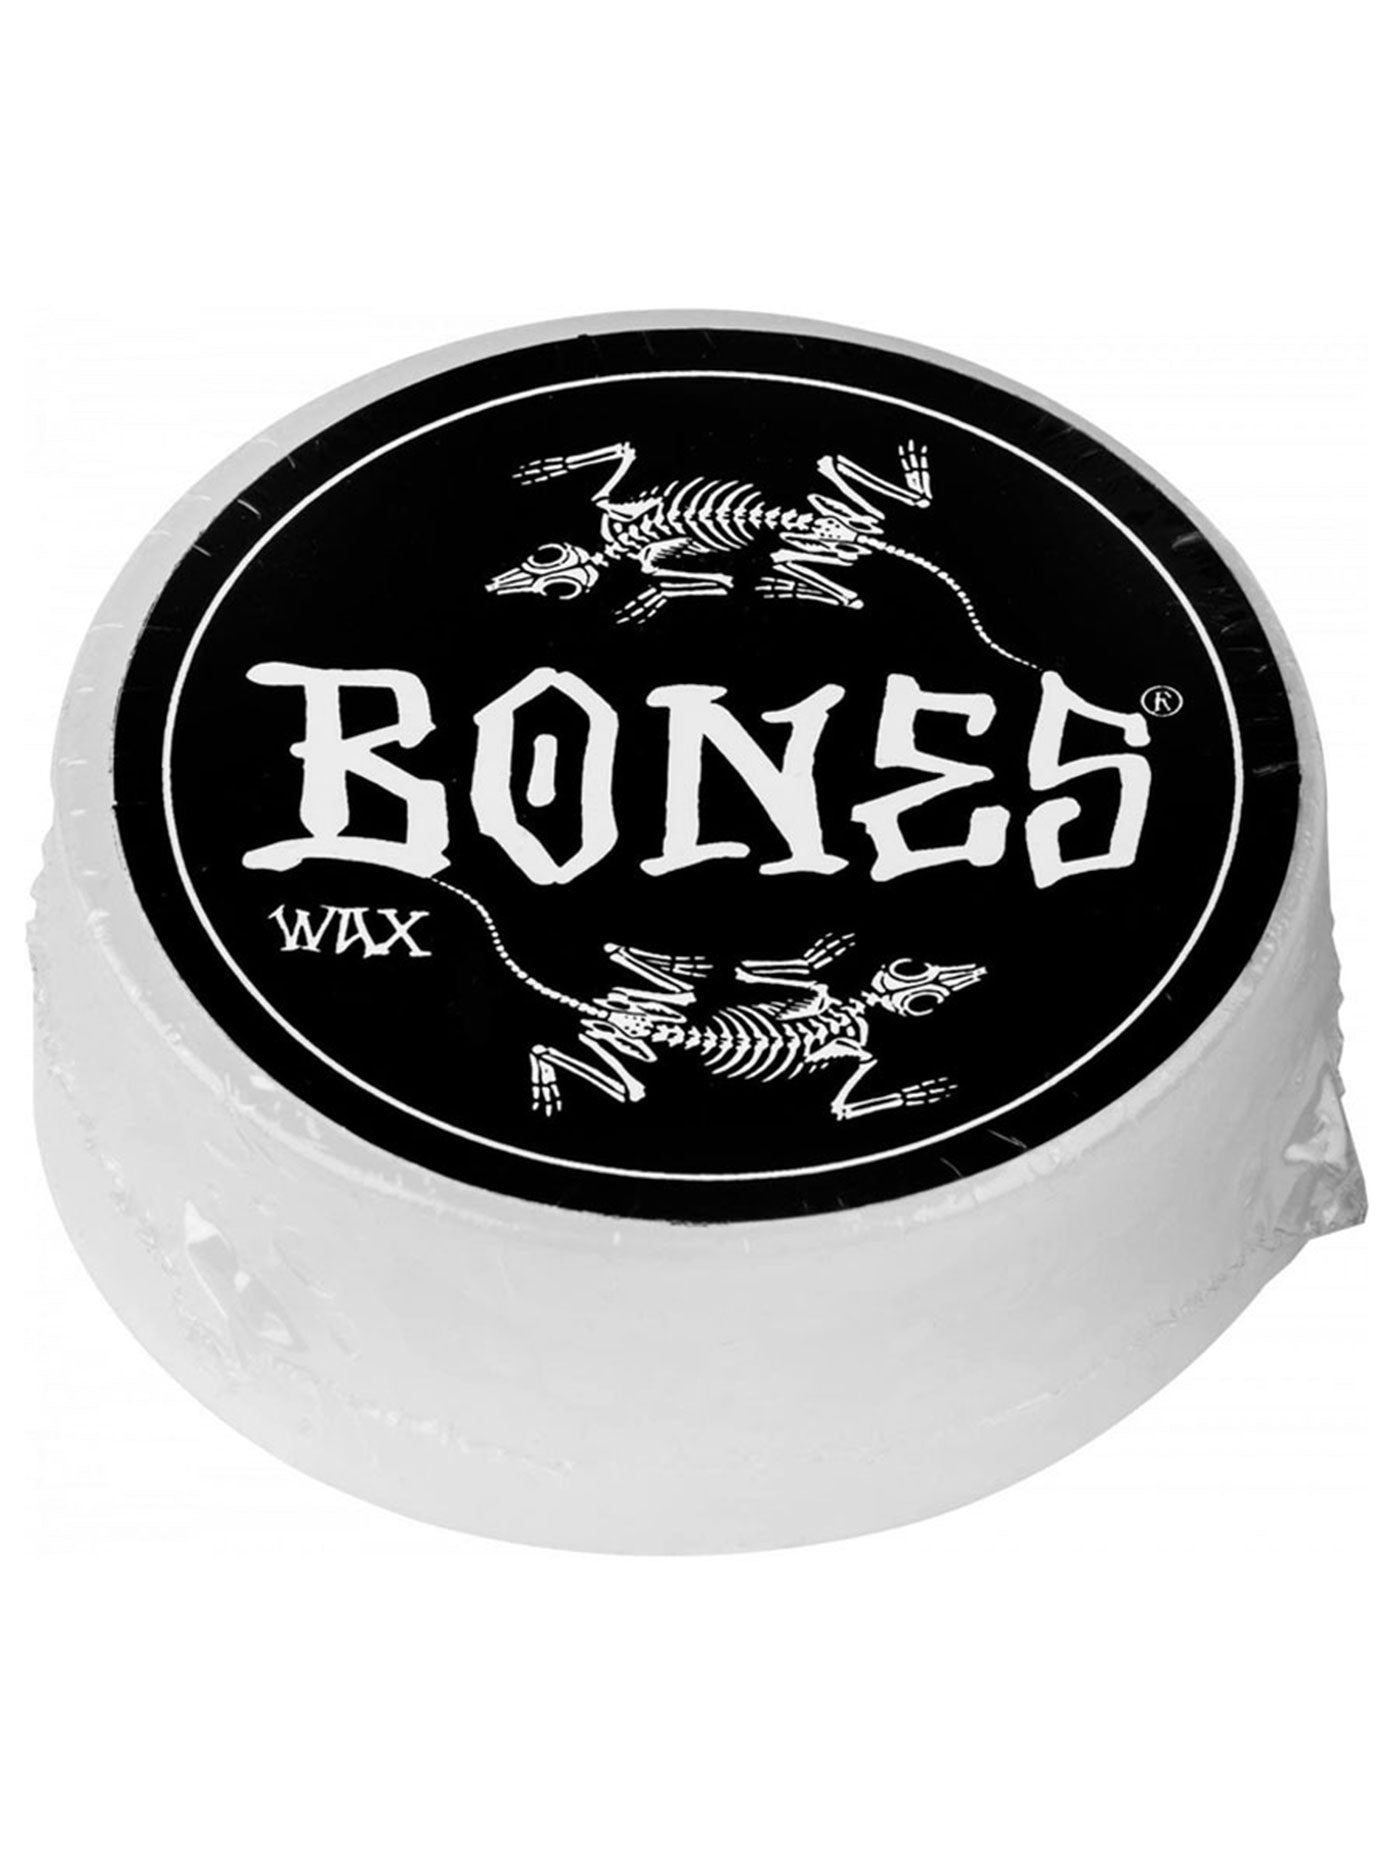 Bones Vato Rat Wax